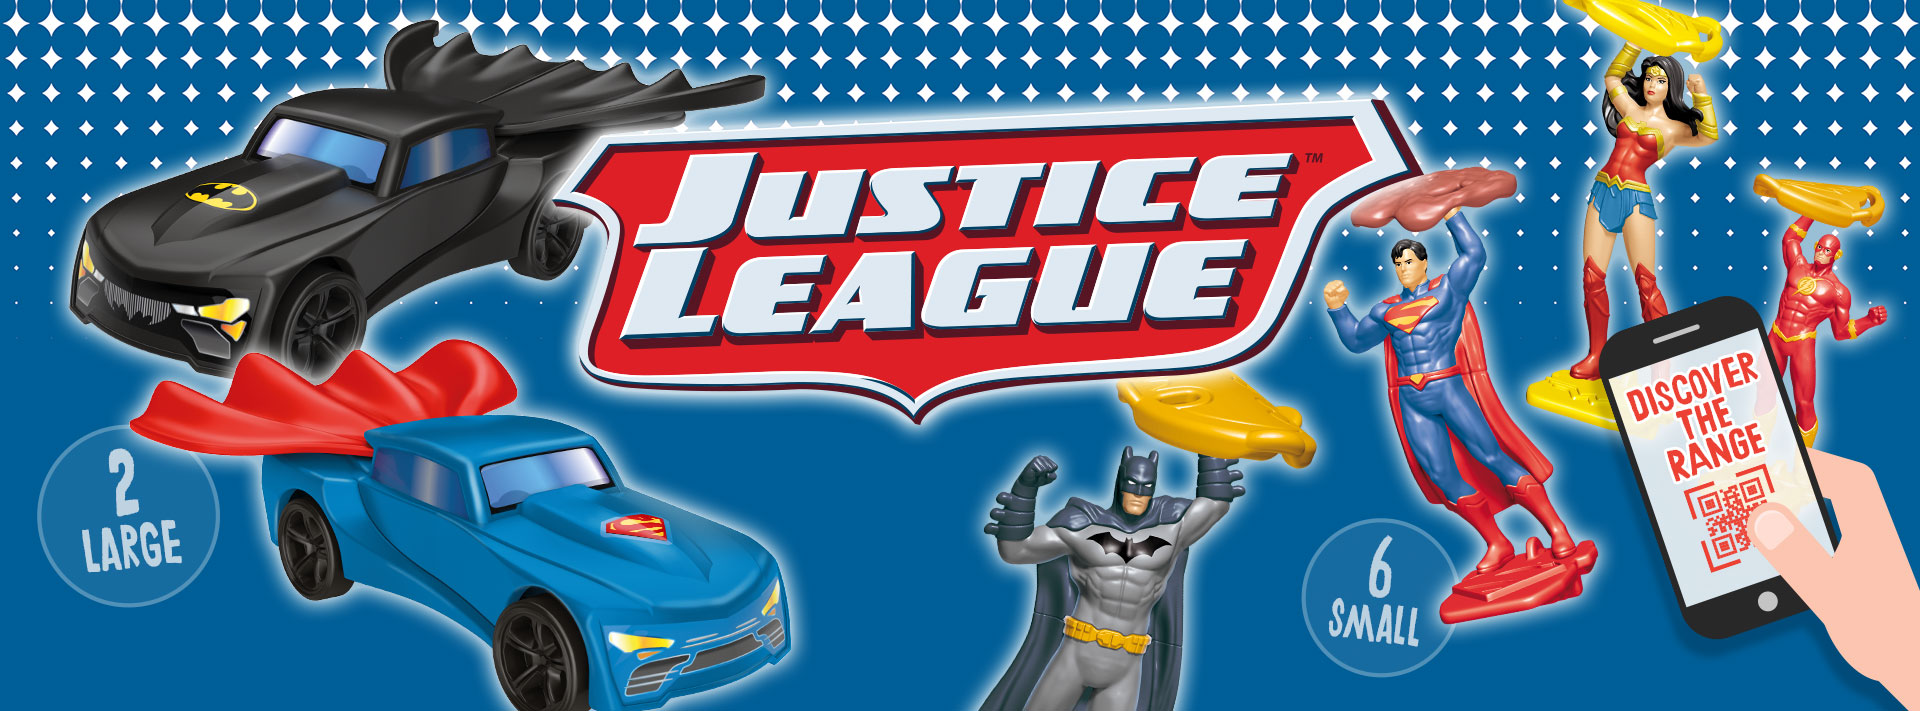 kinder joy justice league 2019